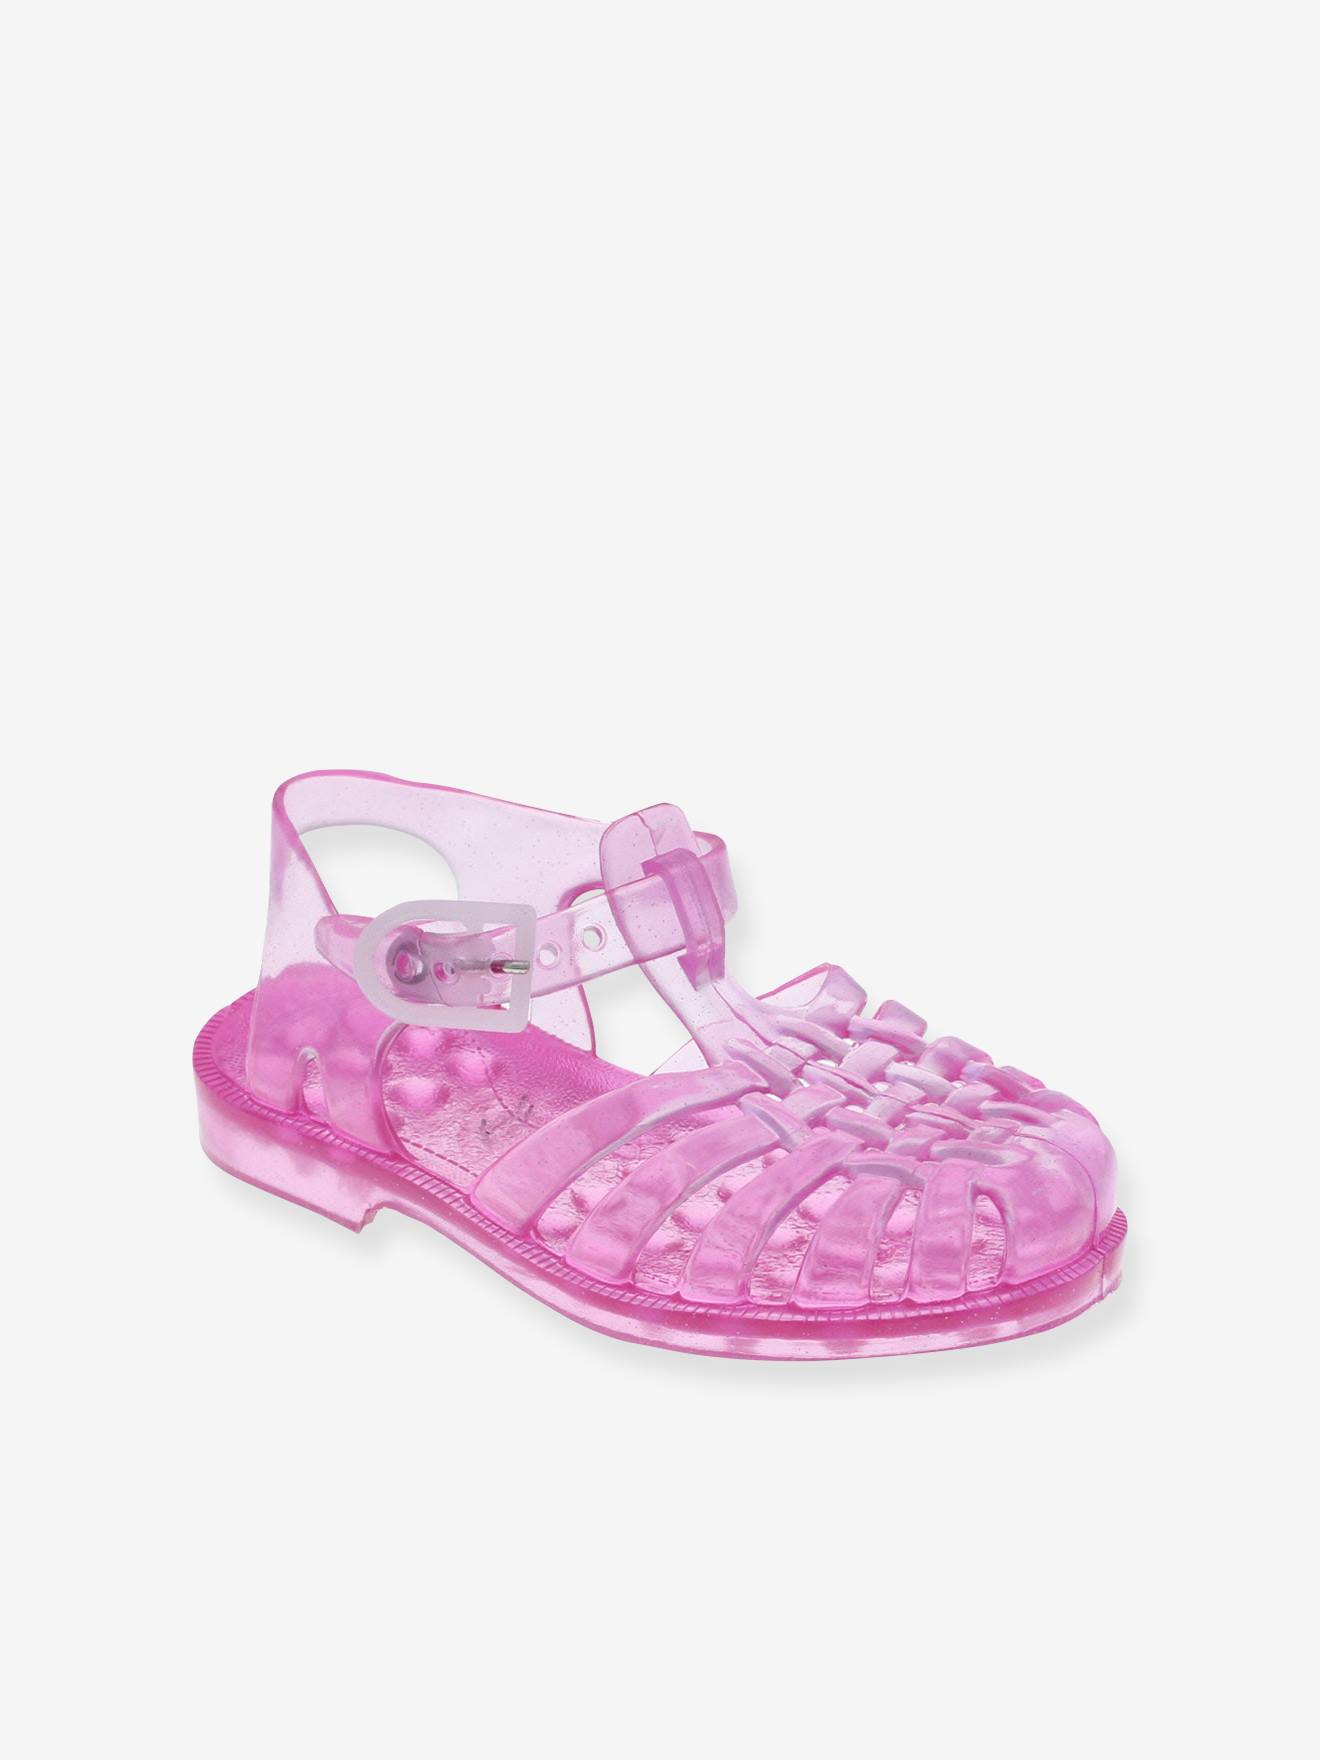 Sun Meduse(r) Sandals for Girls shimmery pink